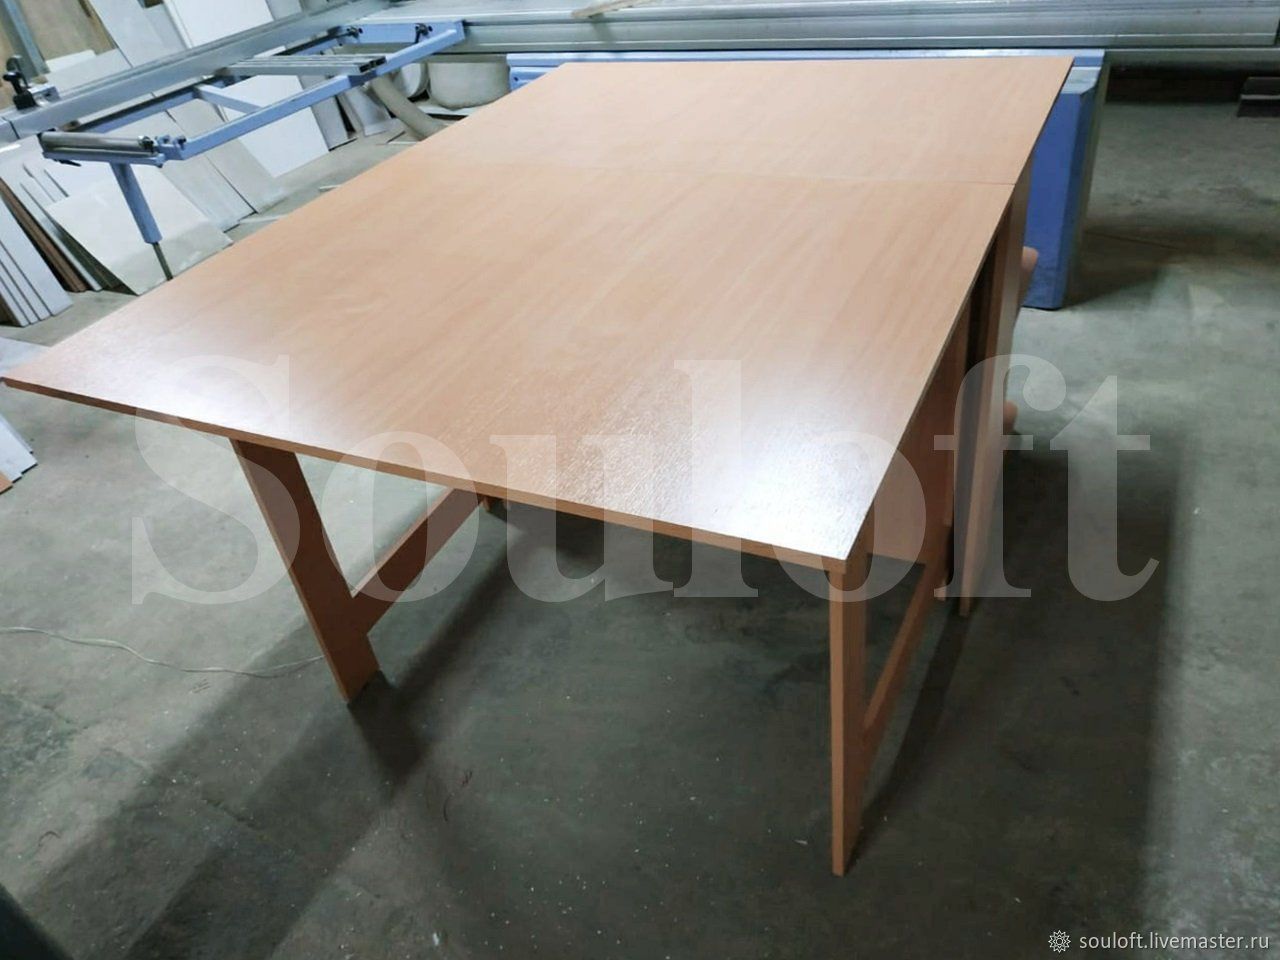 Раскройный стол (с нижней полкой) арт. Рс16 стандарт соулофт